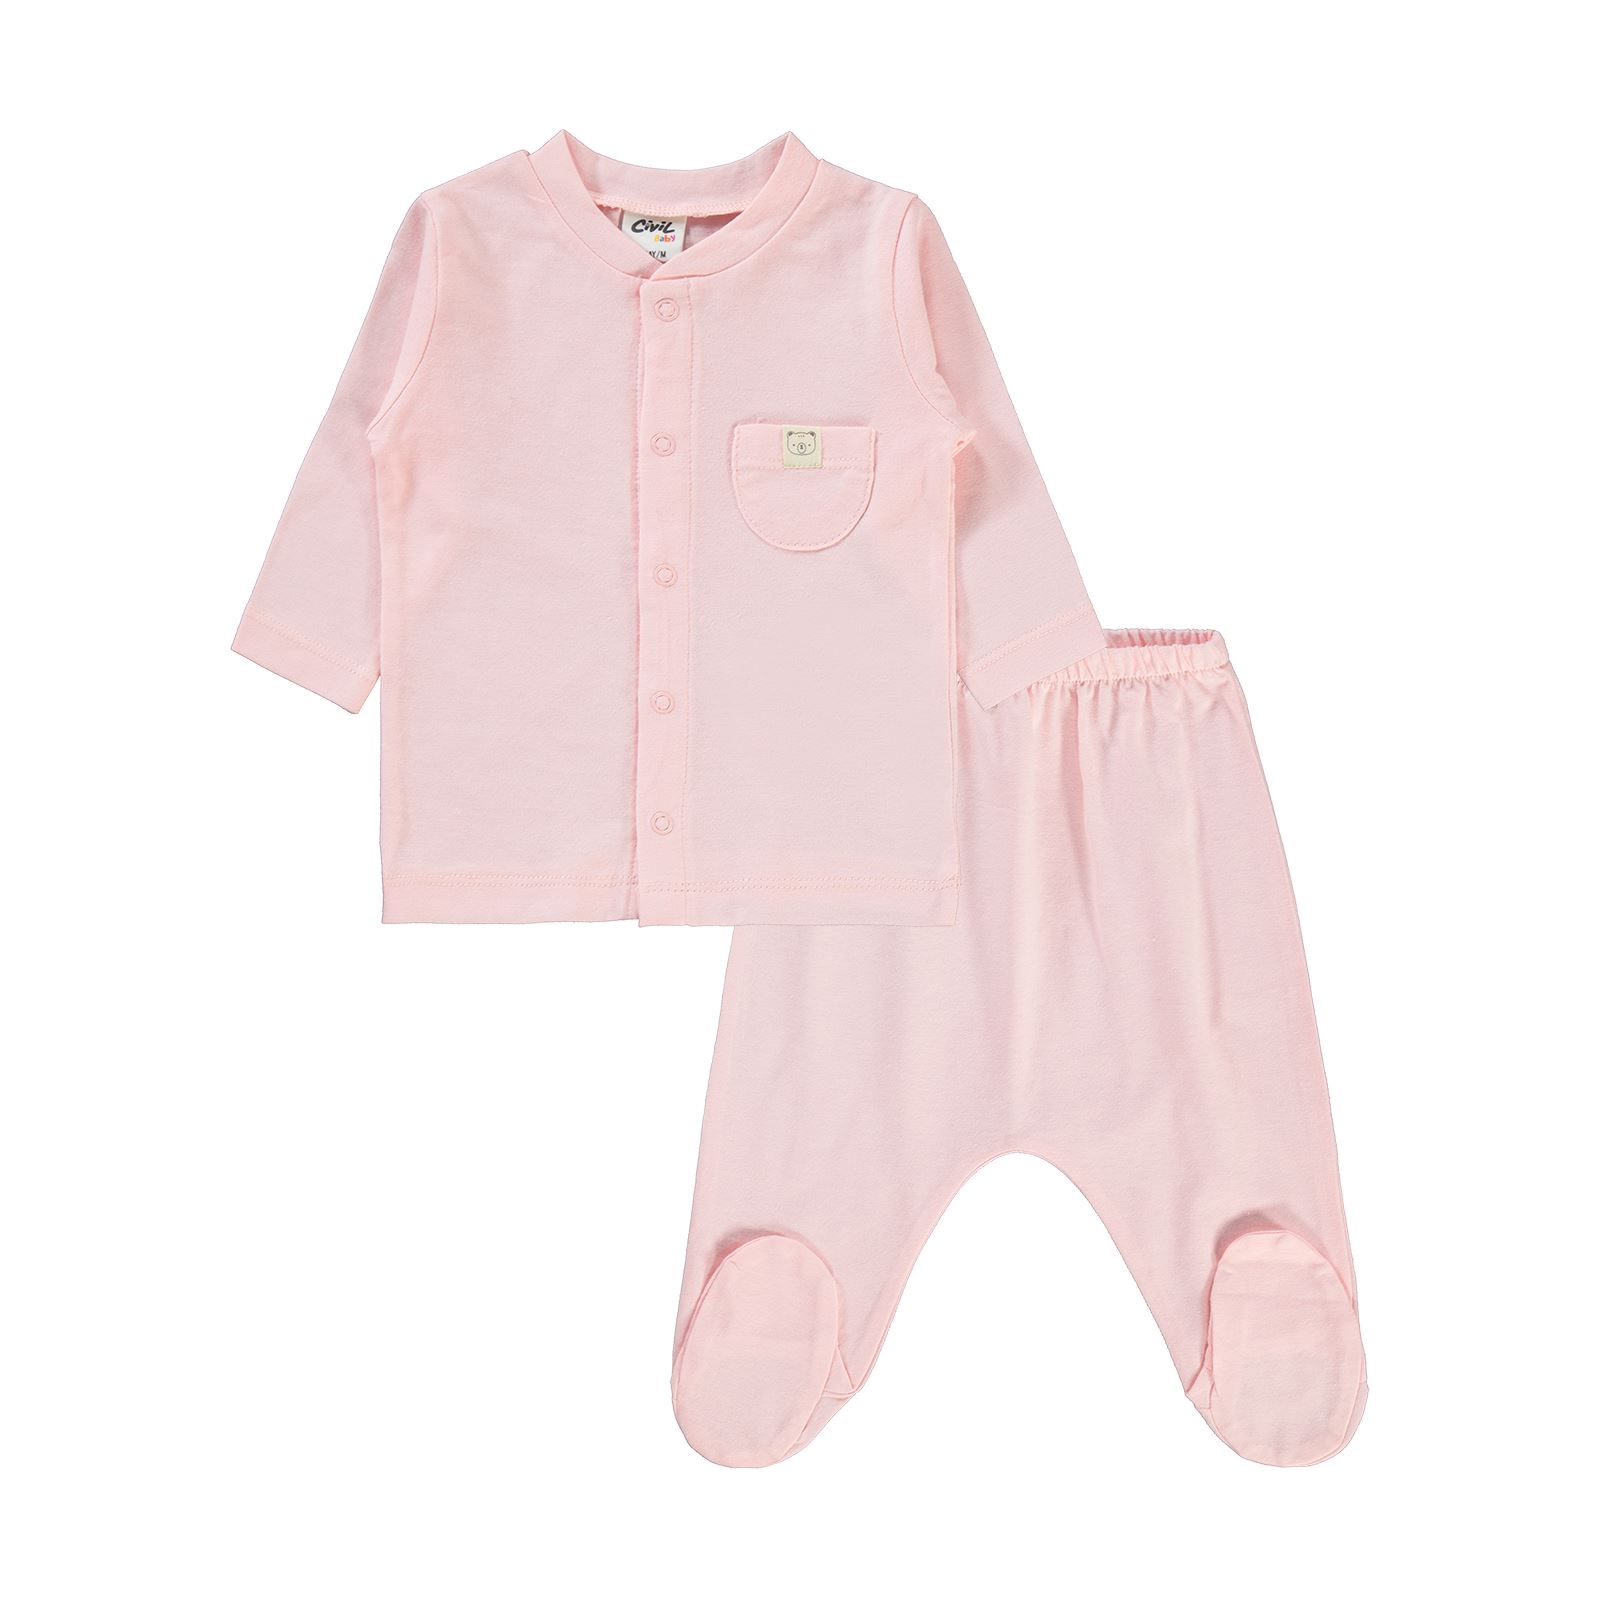 Civil Baby Bebek Pijama Takımı 1-6 Ay Pudra Pembe